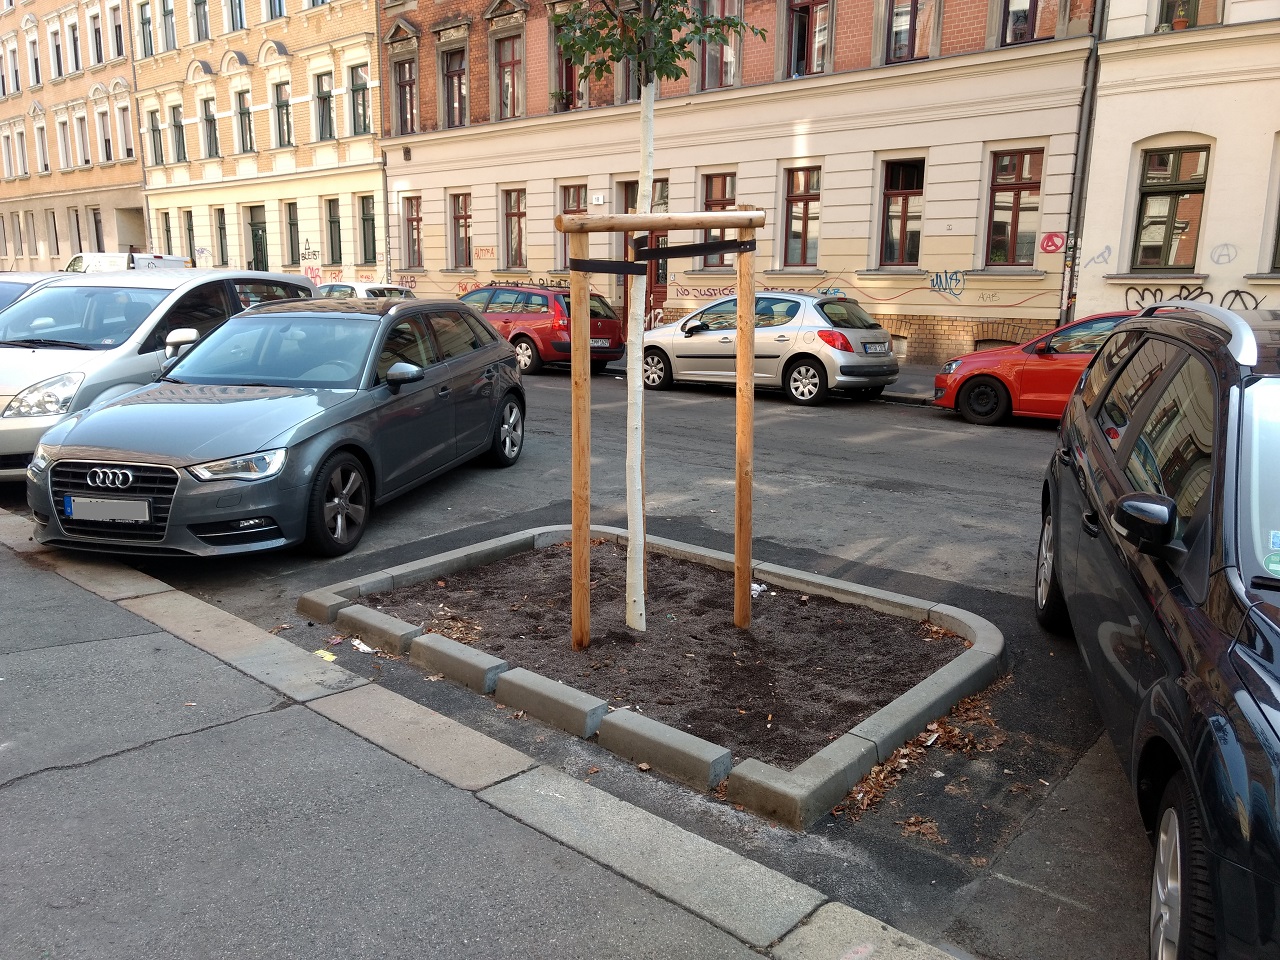 Baumpflanzung nach dem Zwickauer Modell in der Pfeffingerstraße